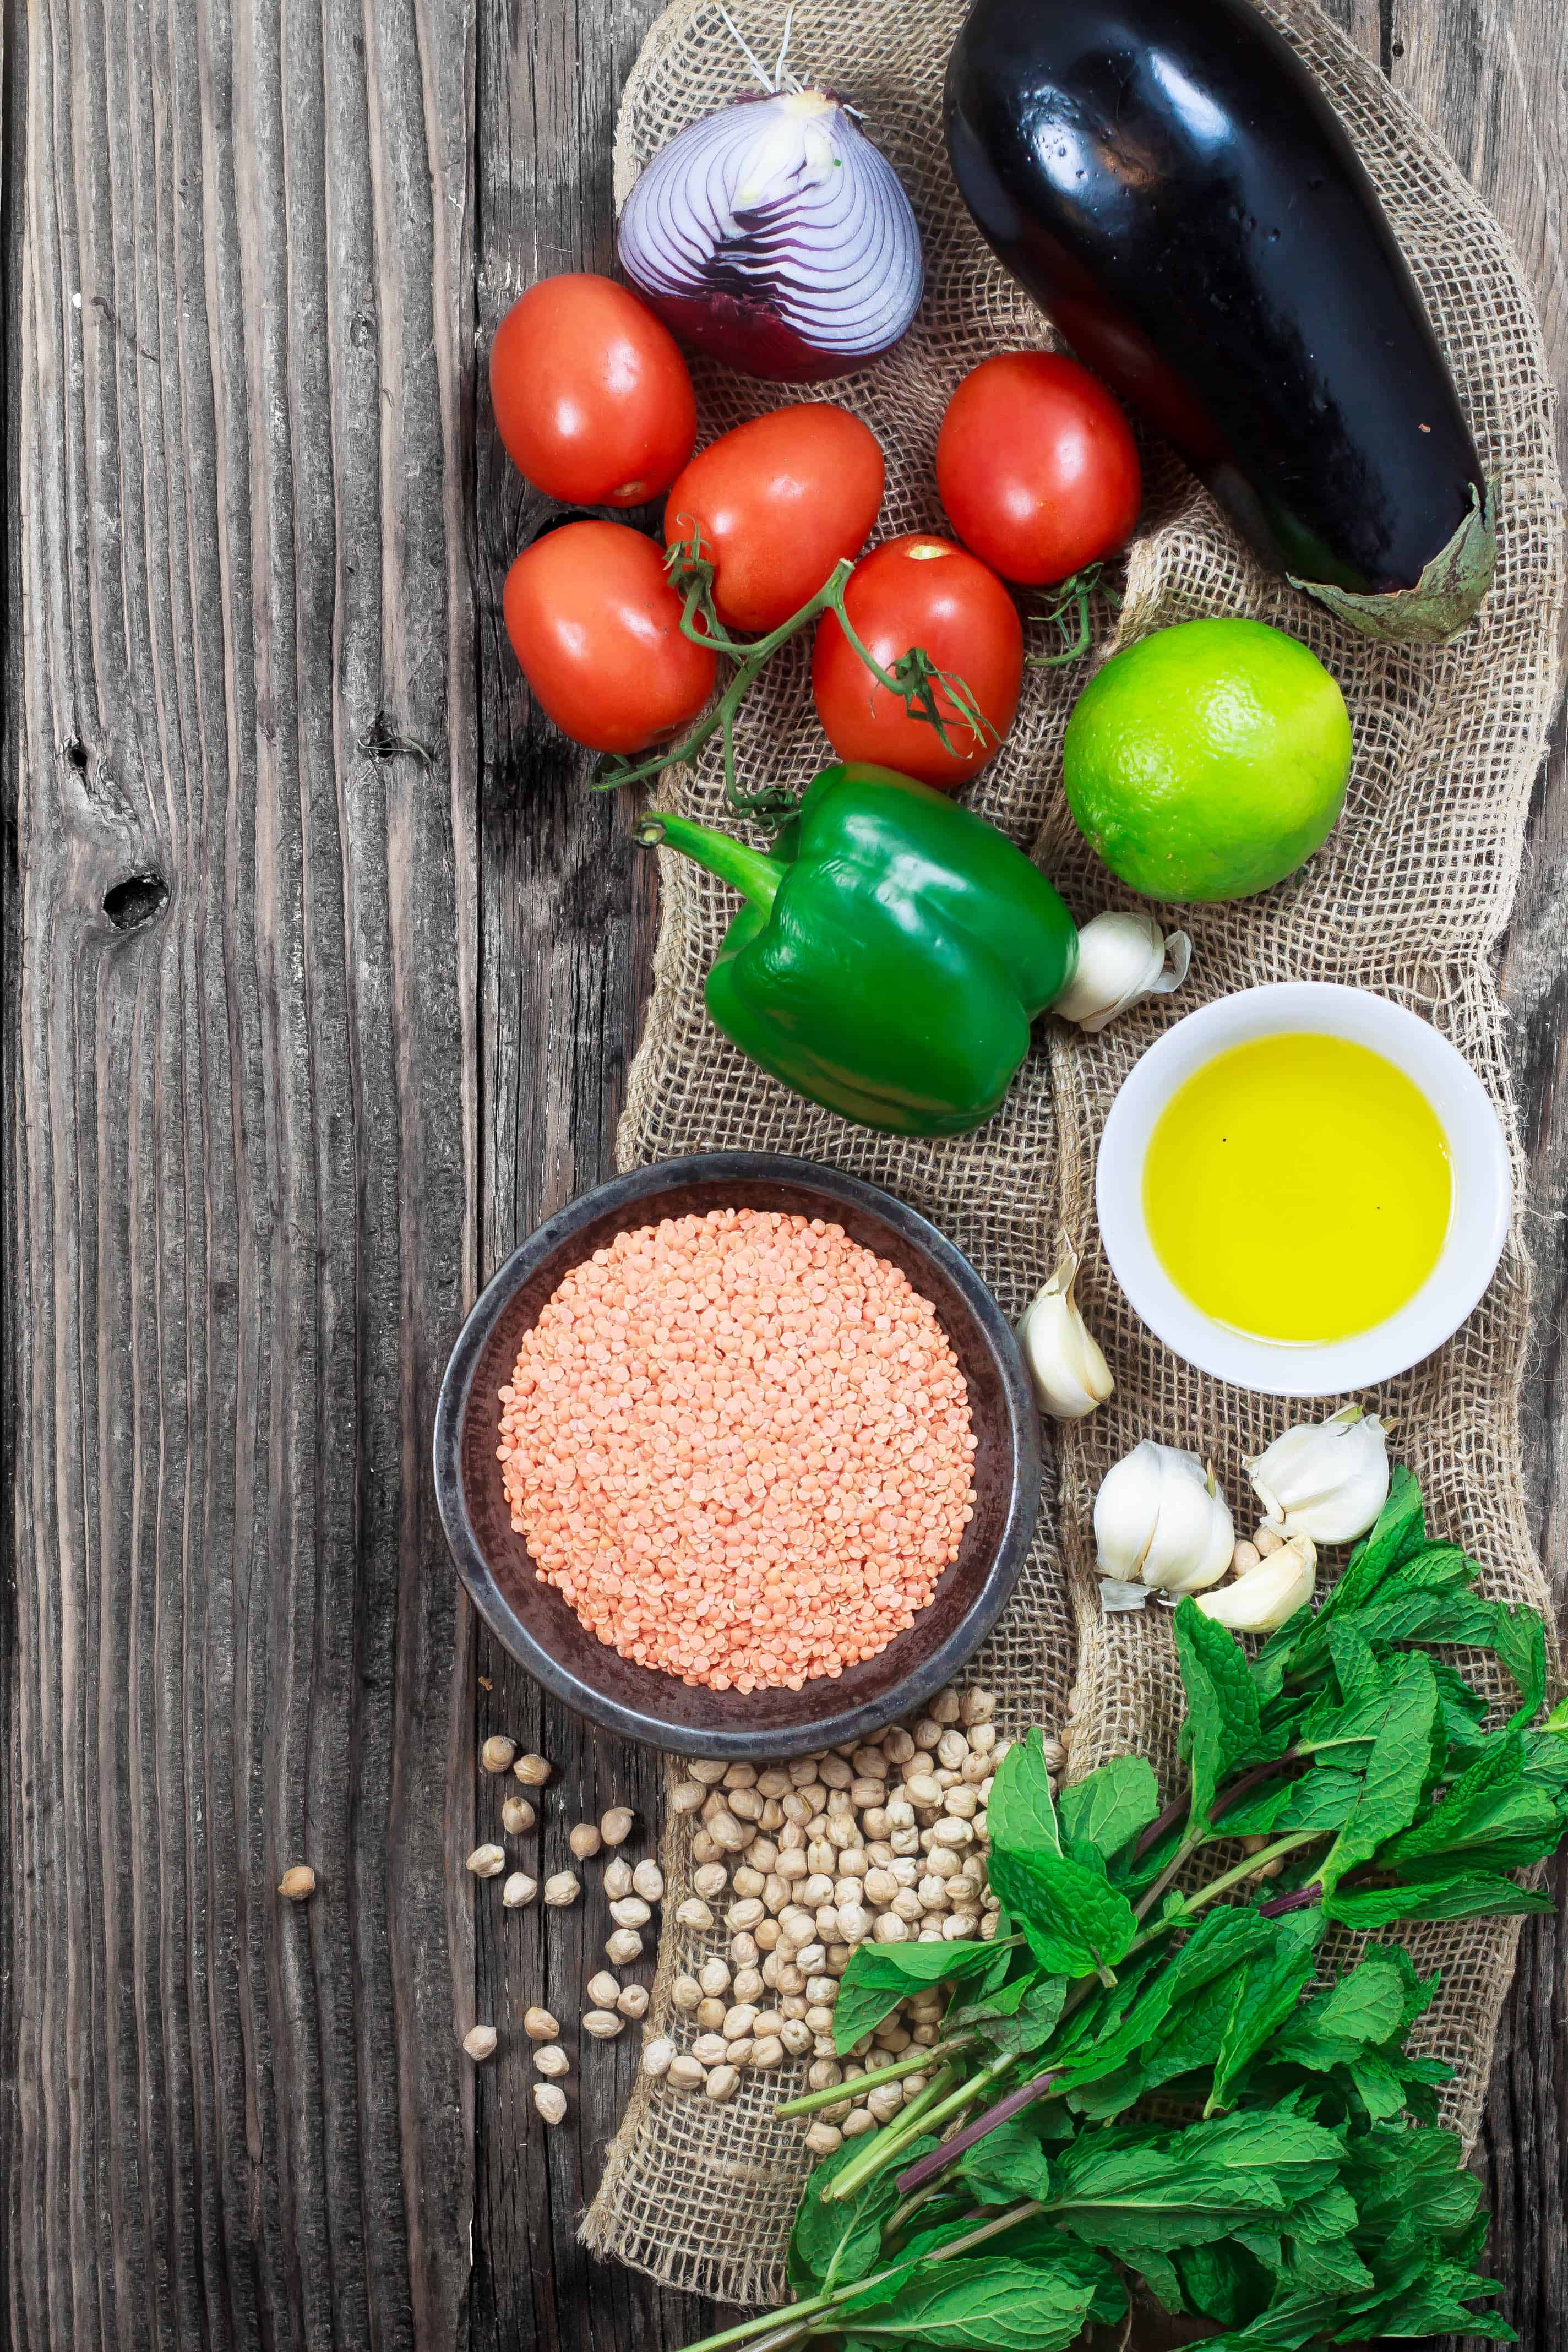 Legumes, vegetables, herbs for Mediterranean diet eating